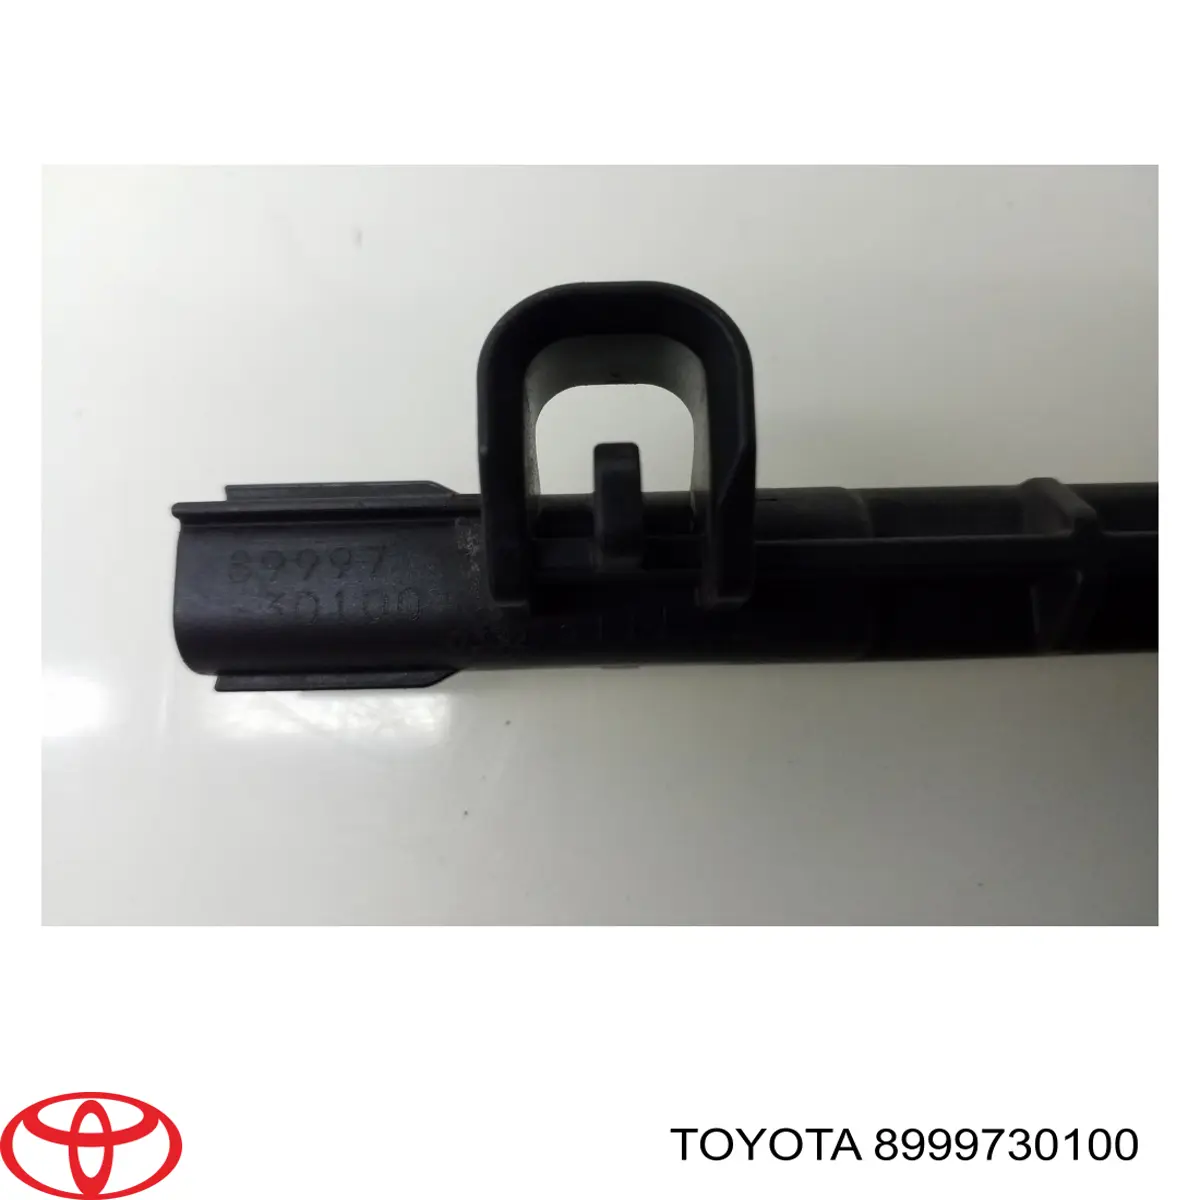 8999730100 Toyota antena ( anillo de inmovilizador)